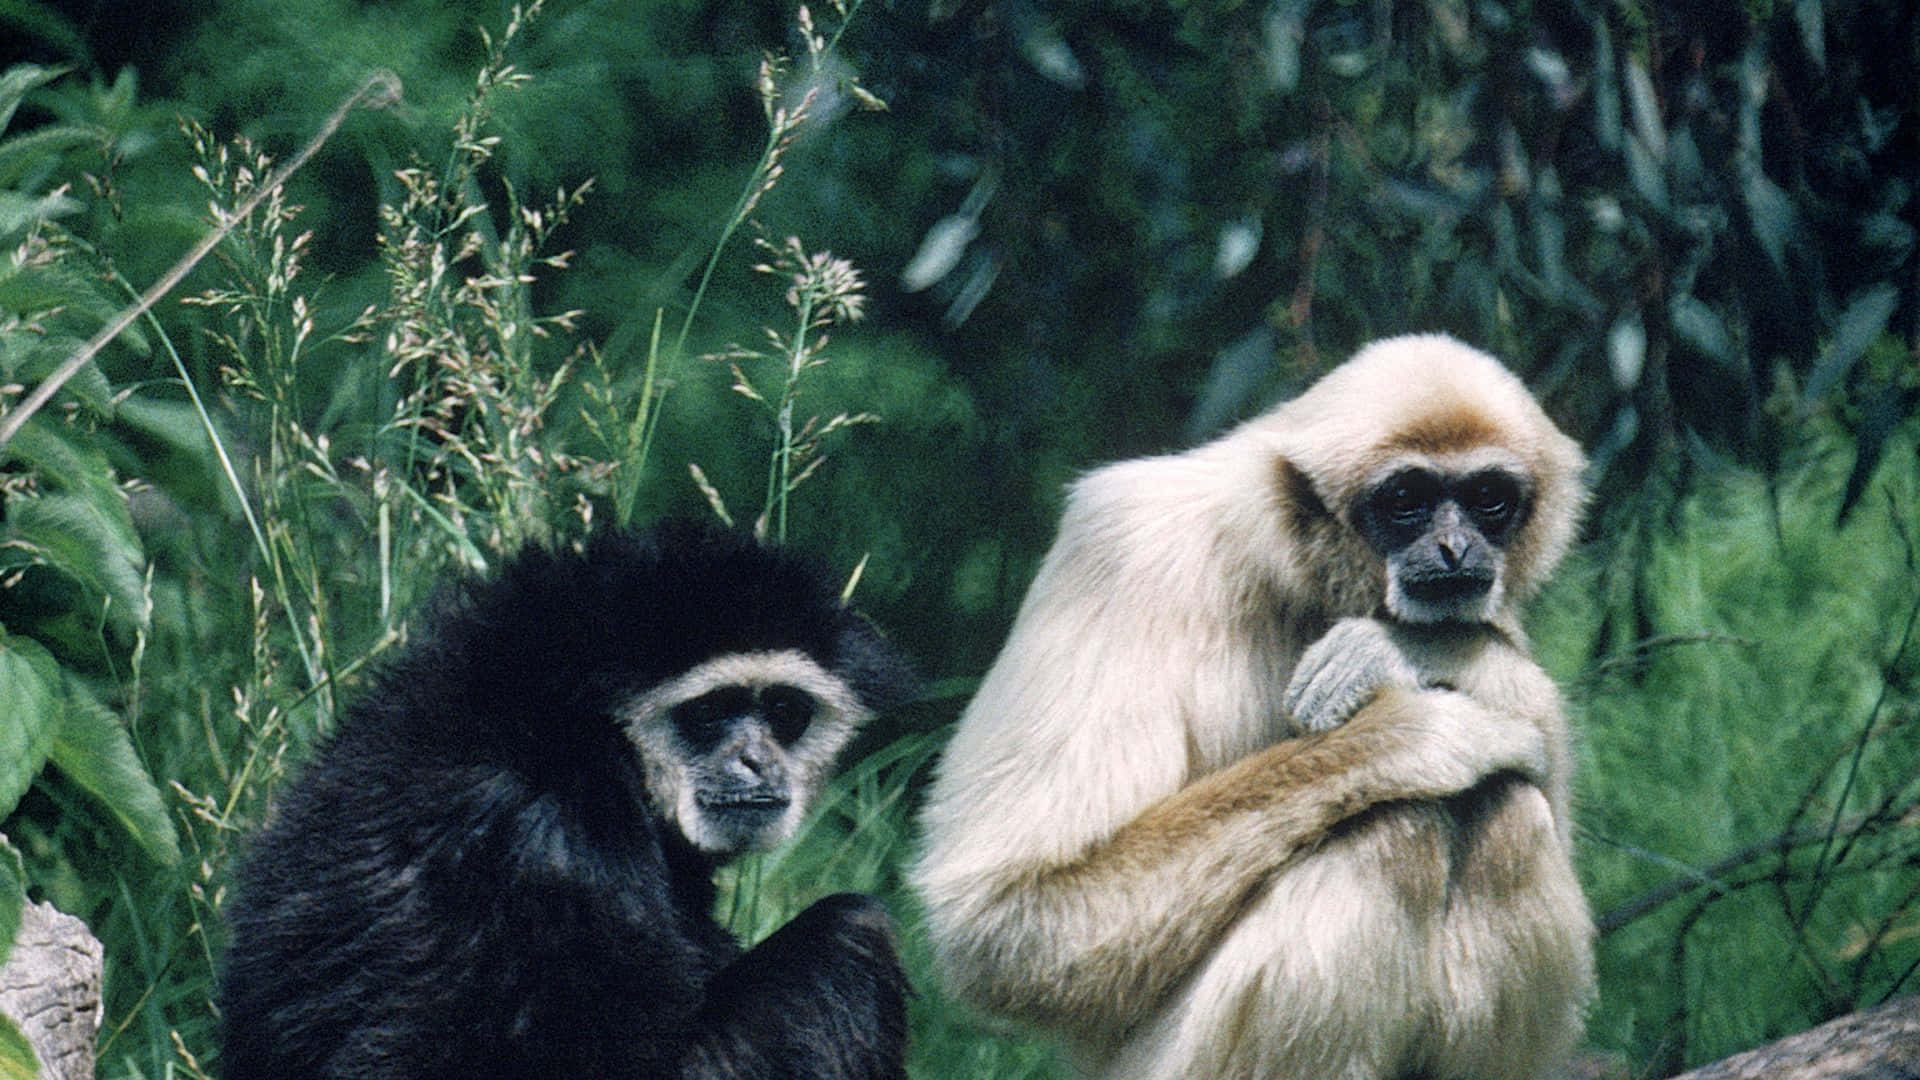 Uncurioso Gibbone Dalle Mani Bianche Circondato Da Una Lussureggiante Vegetazione Verde